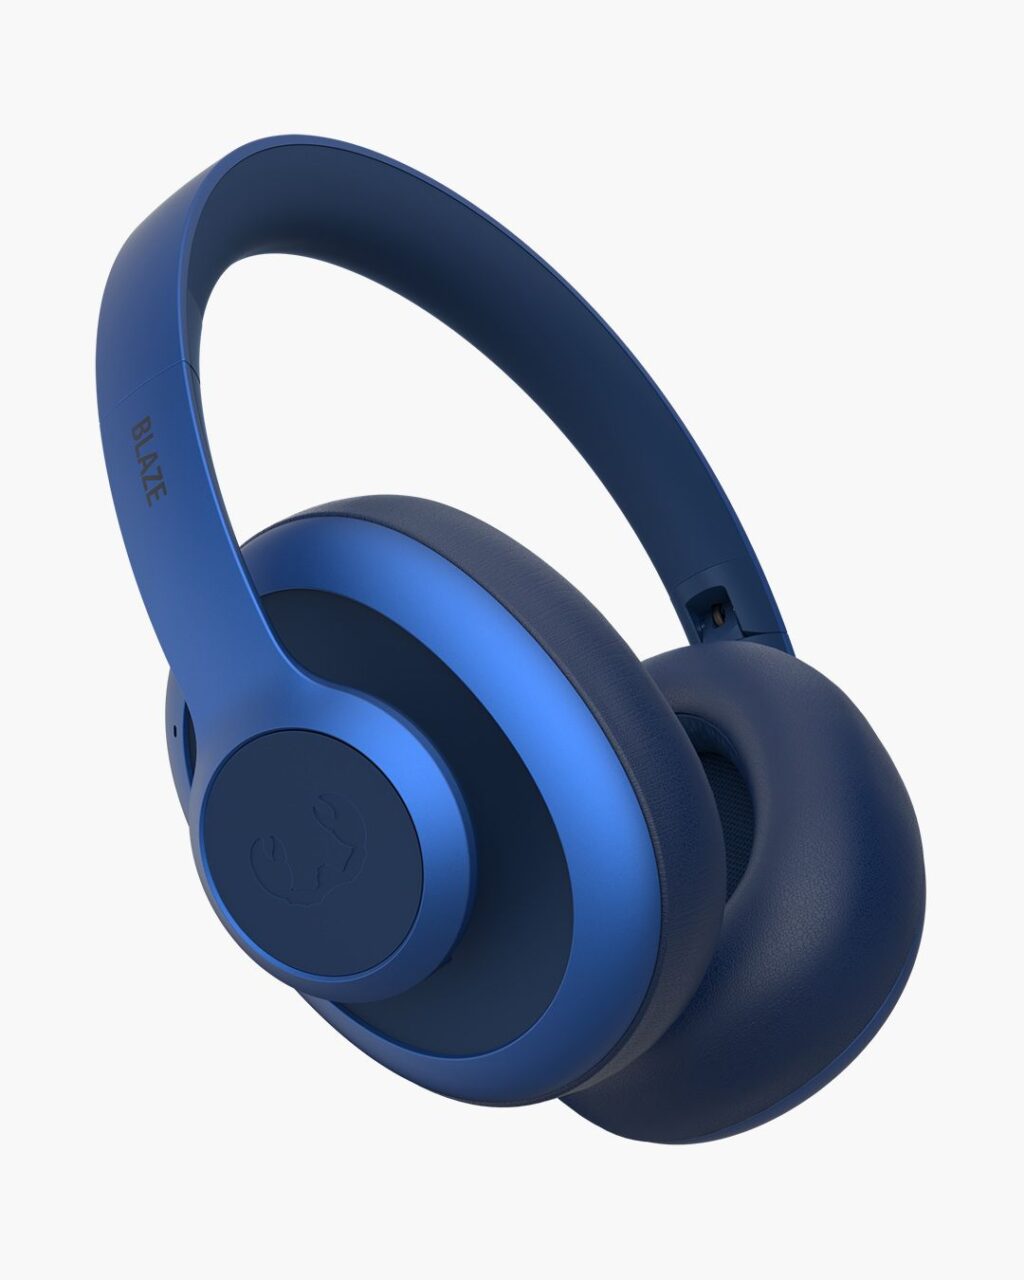 Niebieskie bezprzewodowe słuchawki nauszne z logo w kształcie głowy byka na nausznikach.